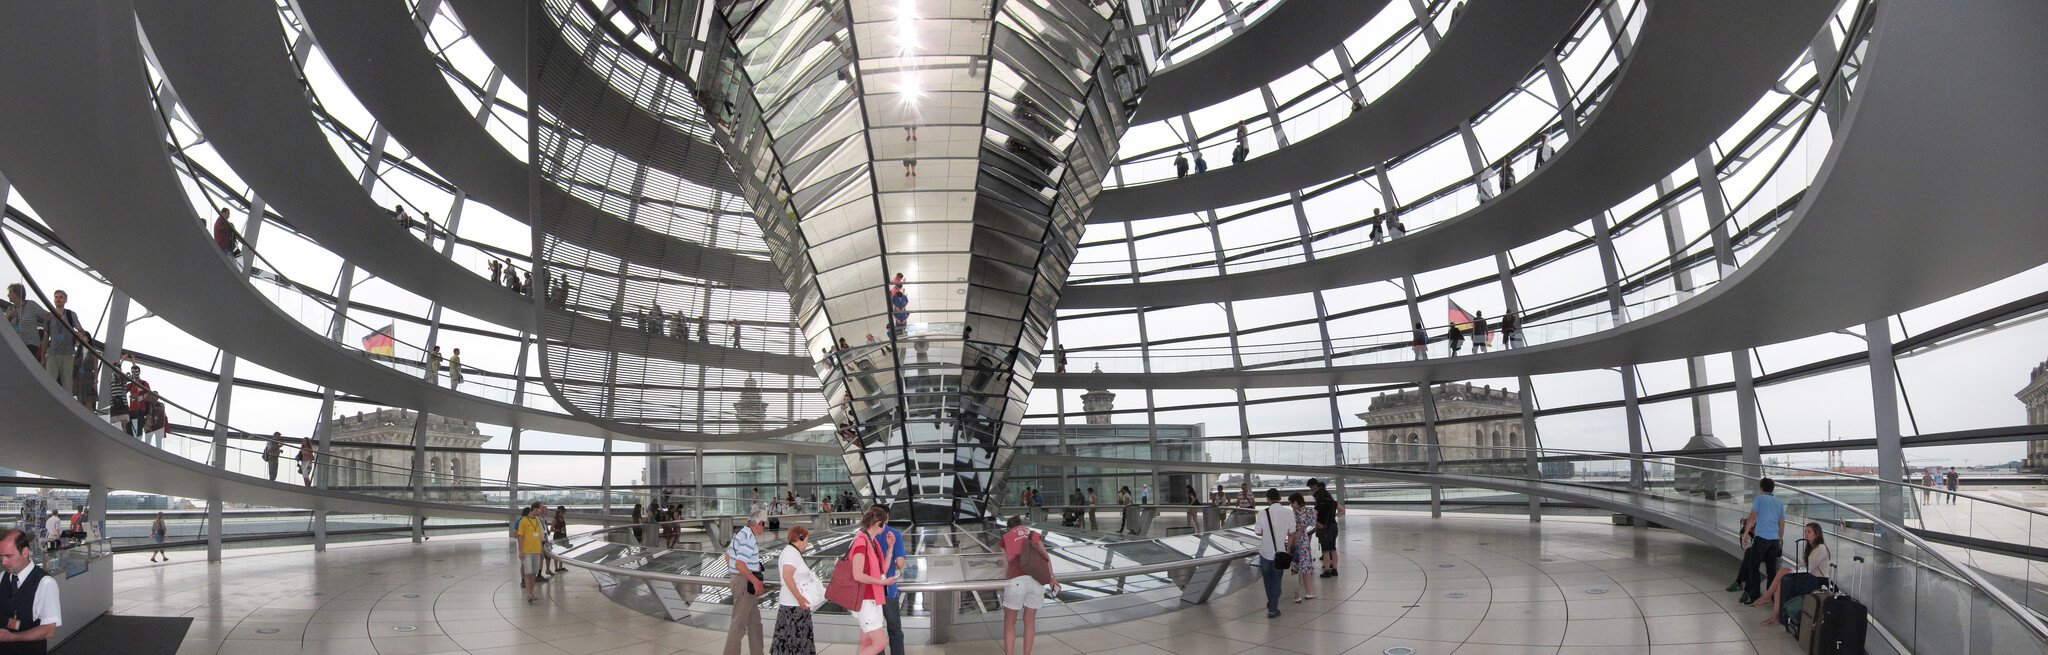 Kuppel Reichstag Berlin